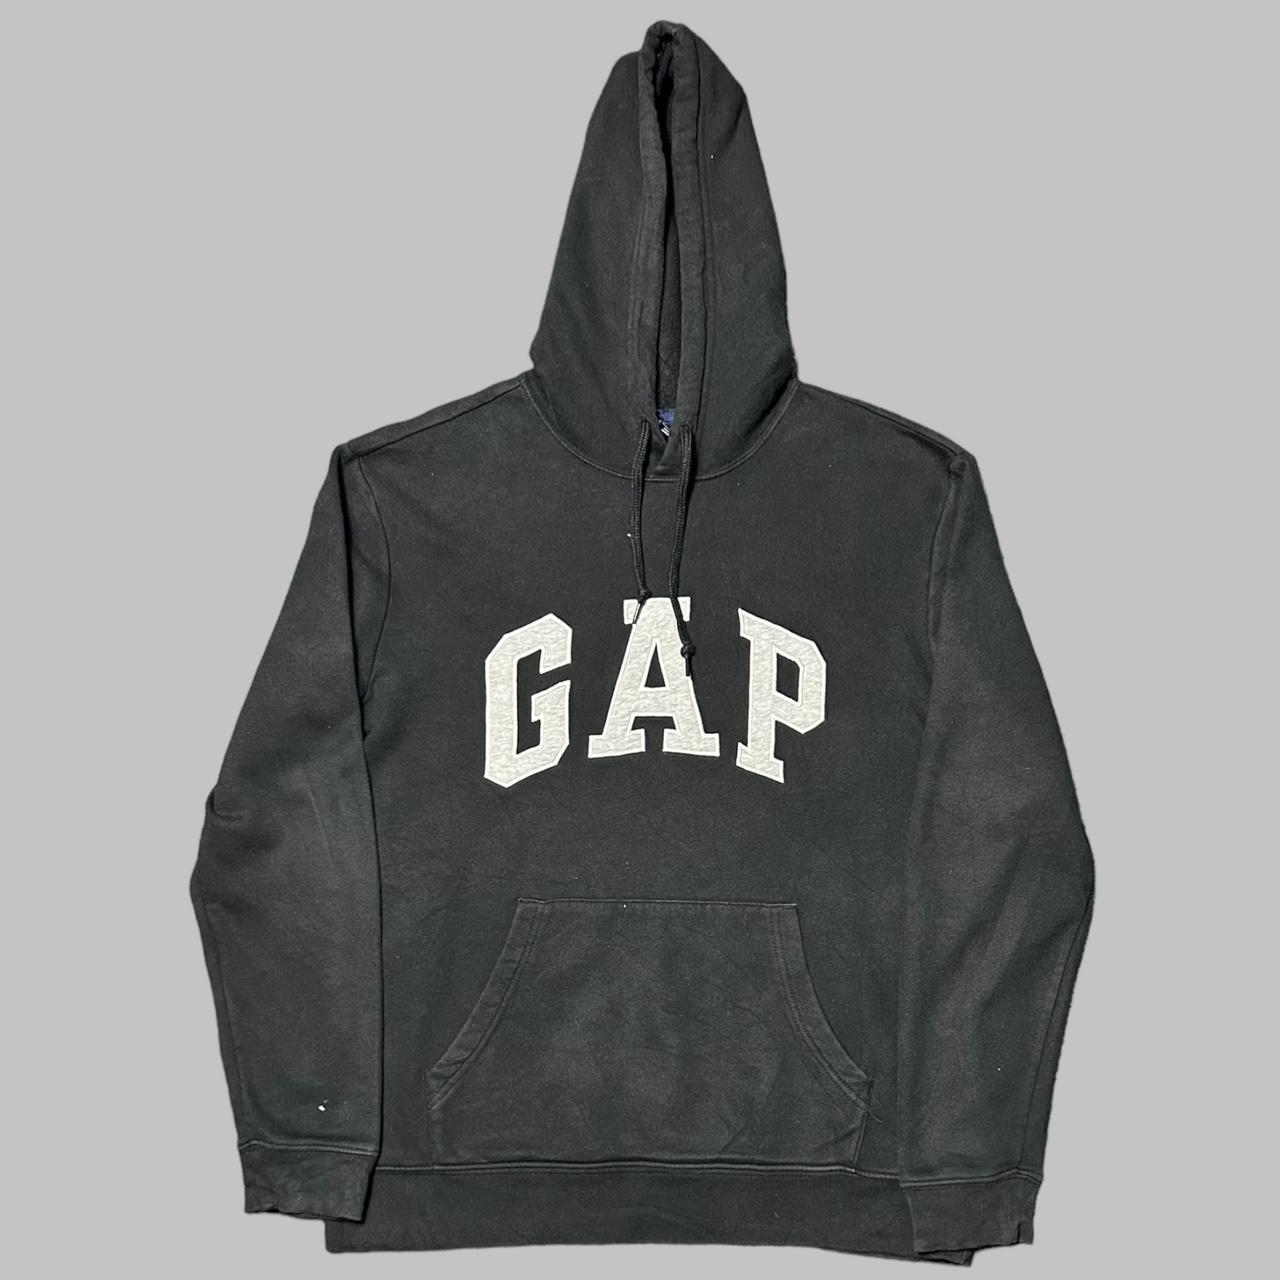 Black vintage spell out Gap hoodie Amazing black... - Depop